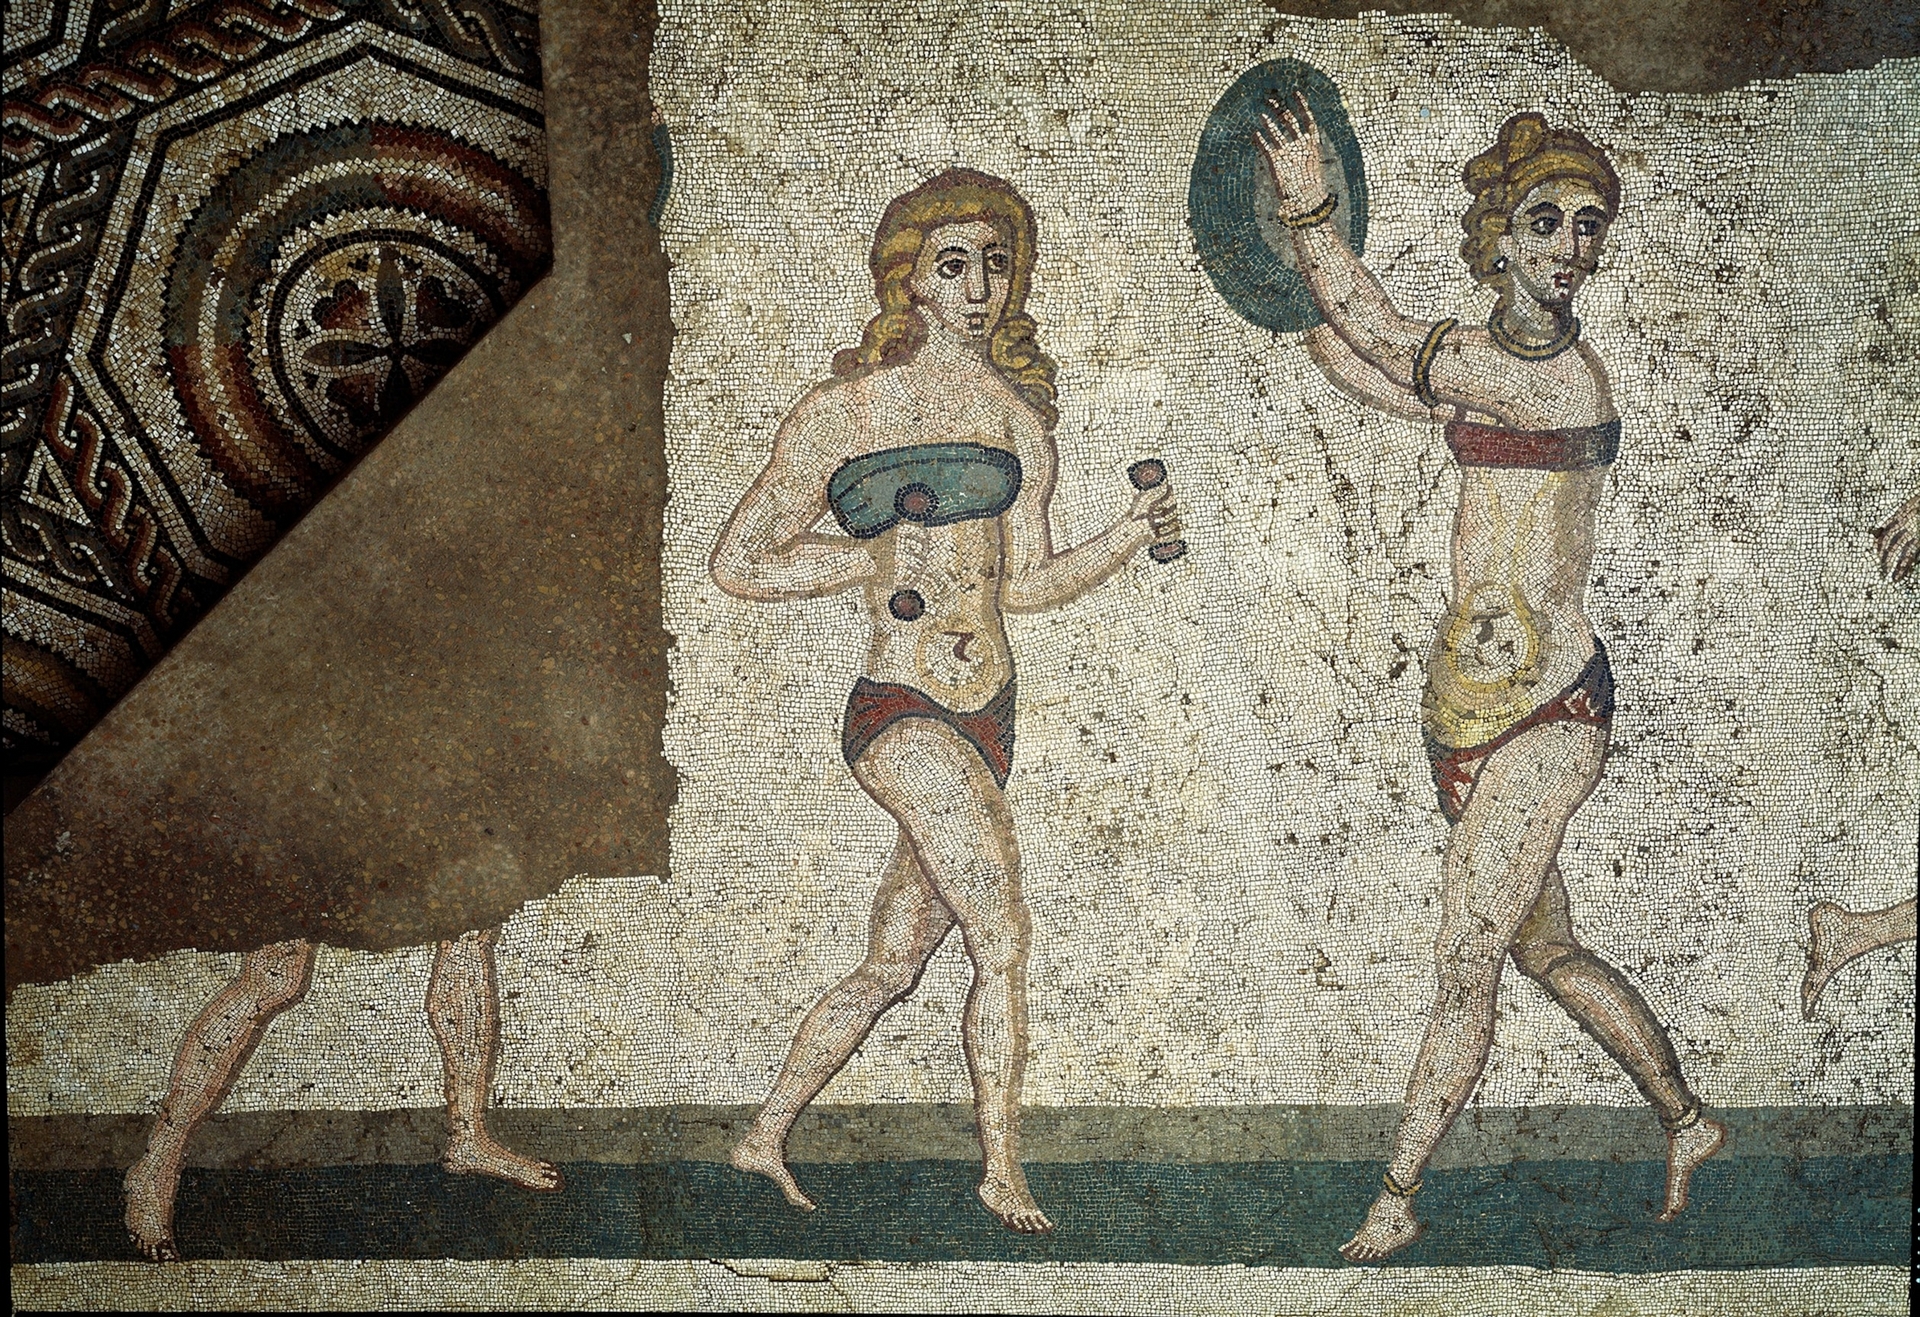 這幅公元4世紀的西西里馬賽克描繪羅馬女性運動時身著「amictorium」，這是一種包裹著胸部的古老比基尼式亞麻衣物。古希臘與古羅馬女性穿著這種「類胸罩」衣物的用意究竟是支撐、流行，或兩者皆是？學者們對此各持己見。PHOTOGRAPH BY LUISA RICCIARINI, BRIDGEMAN IMAGES